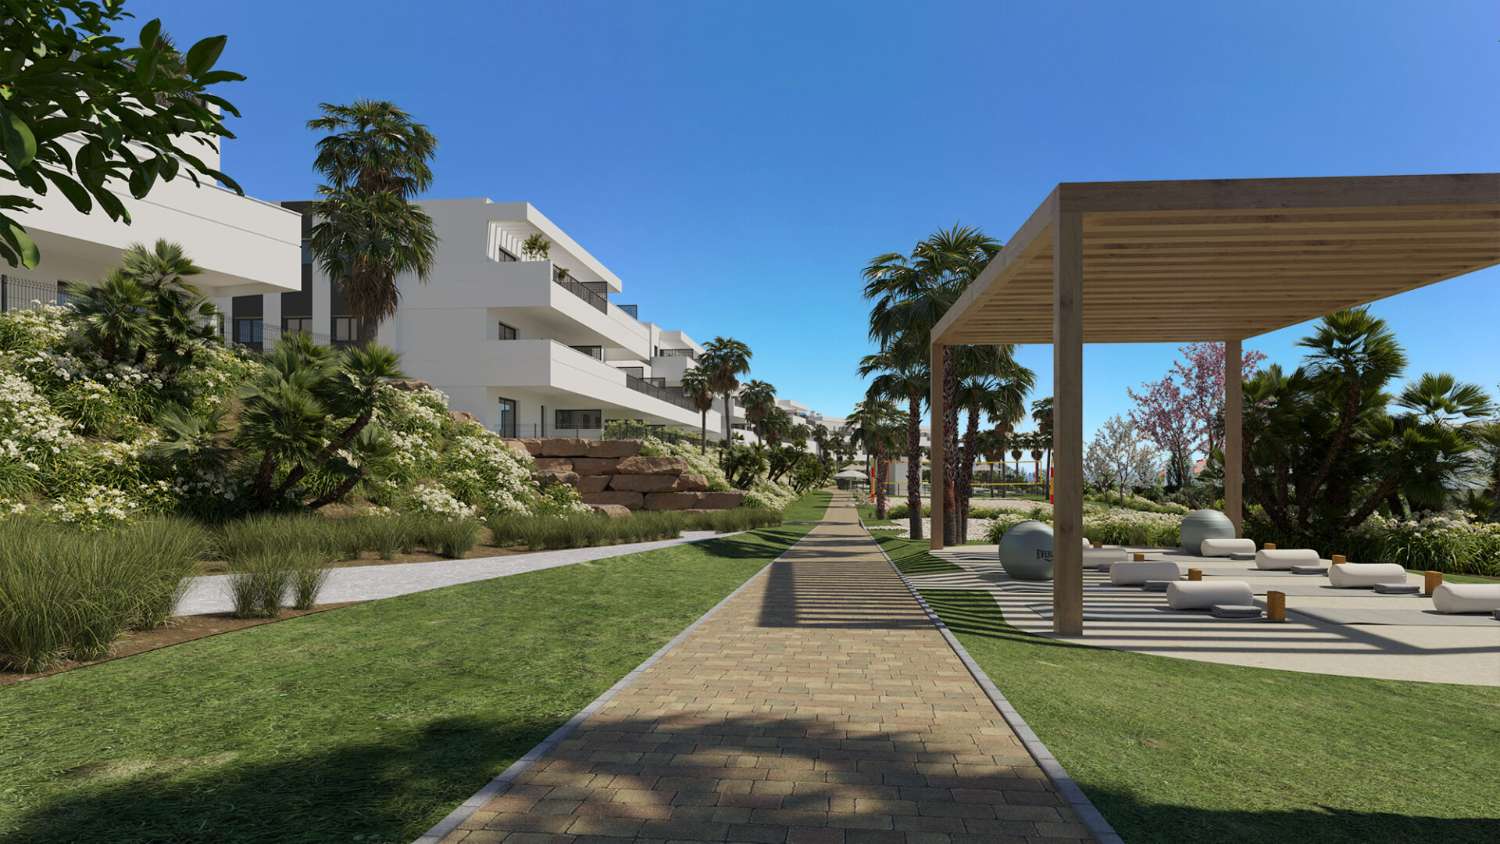 Ny utvikling . Eiendommer til salgs fra € 230.000 i Estepona. Leilighet med hage og første etasje.